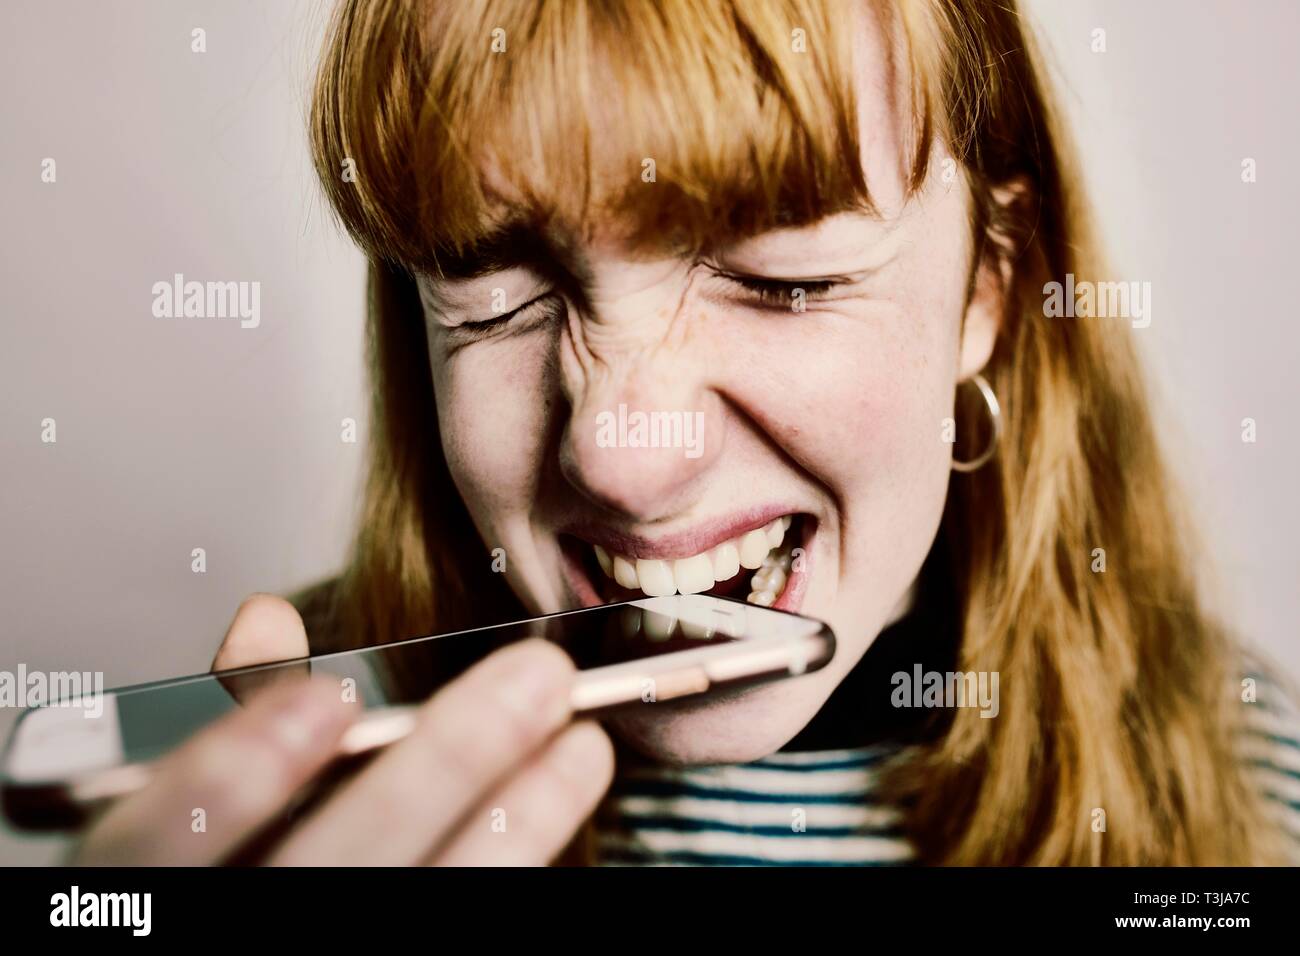 Ragazza adolescente, redheaded, aggredendo il suo smartphone al di fuori della disperazione, studio shot, Germania Foto Stock